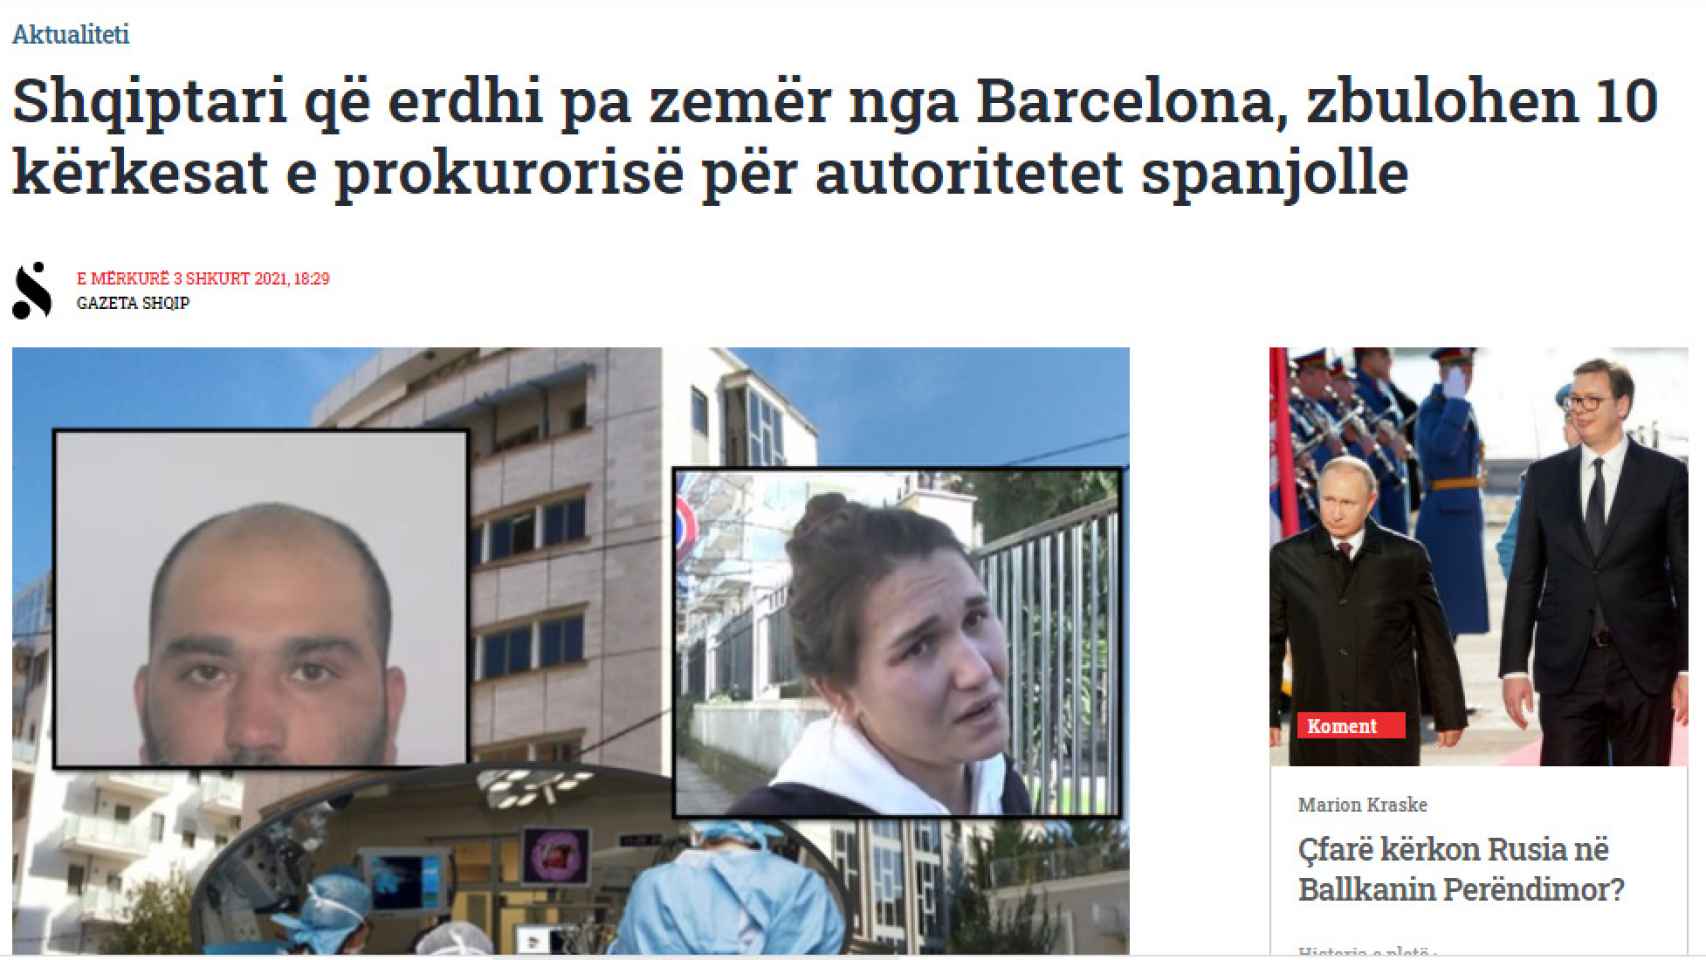 Los medios albaneses, haciéndose eco de la noticia